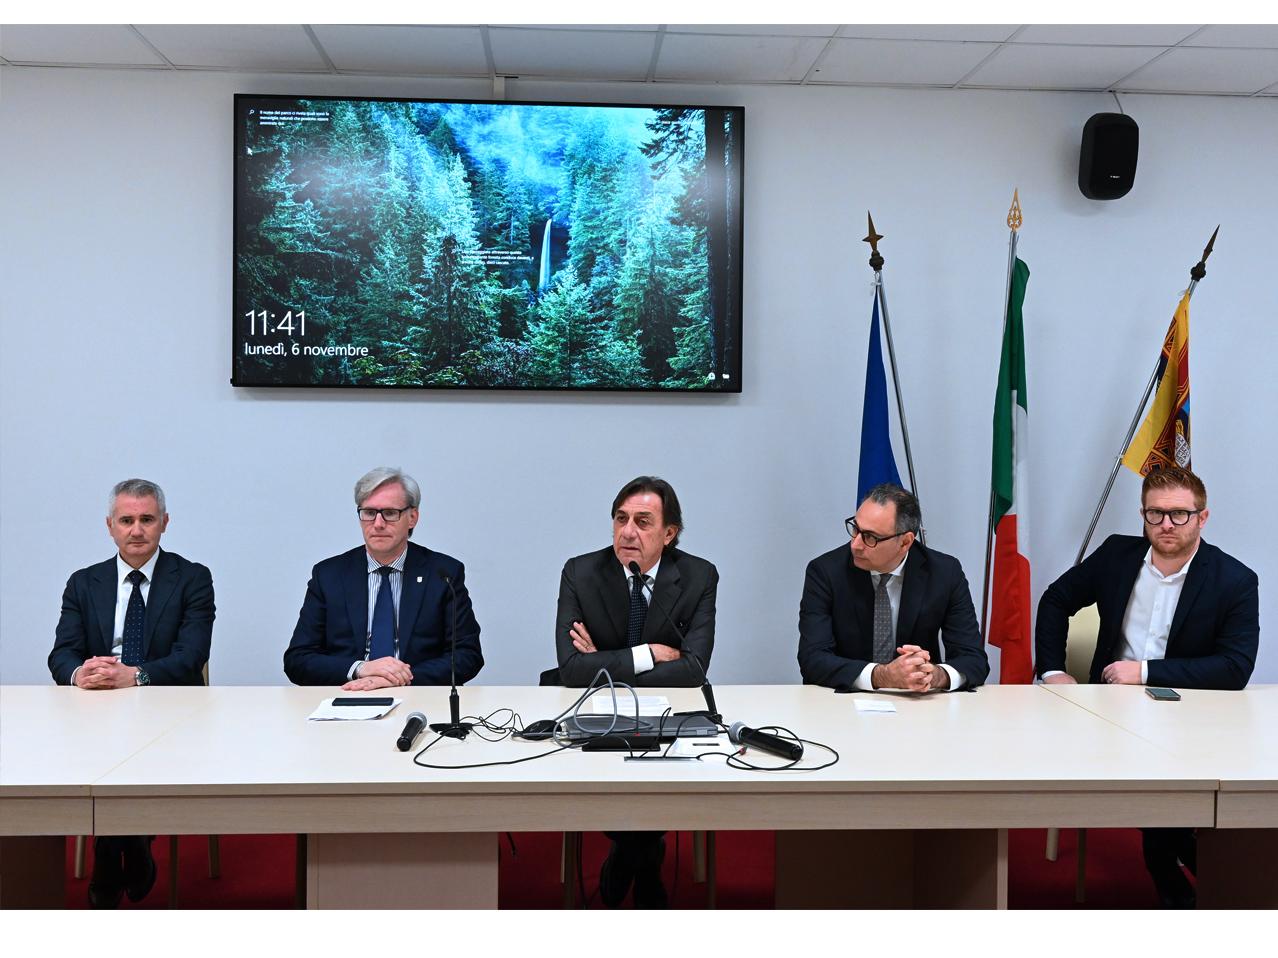 conferenza stampa - finanziamento Regione Veneto alla bonifica della scuola Rolando da Piazzola